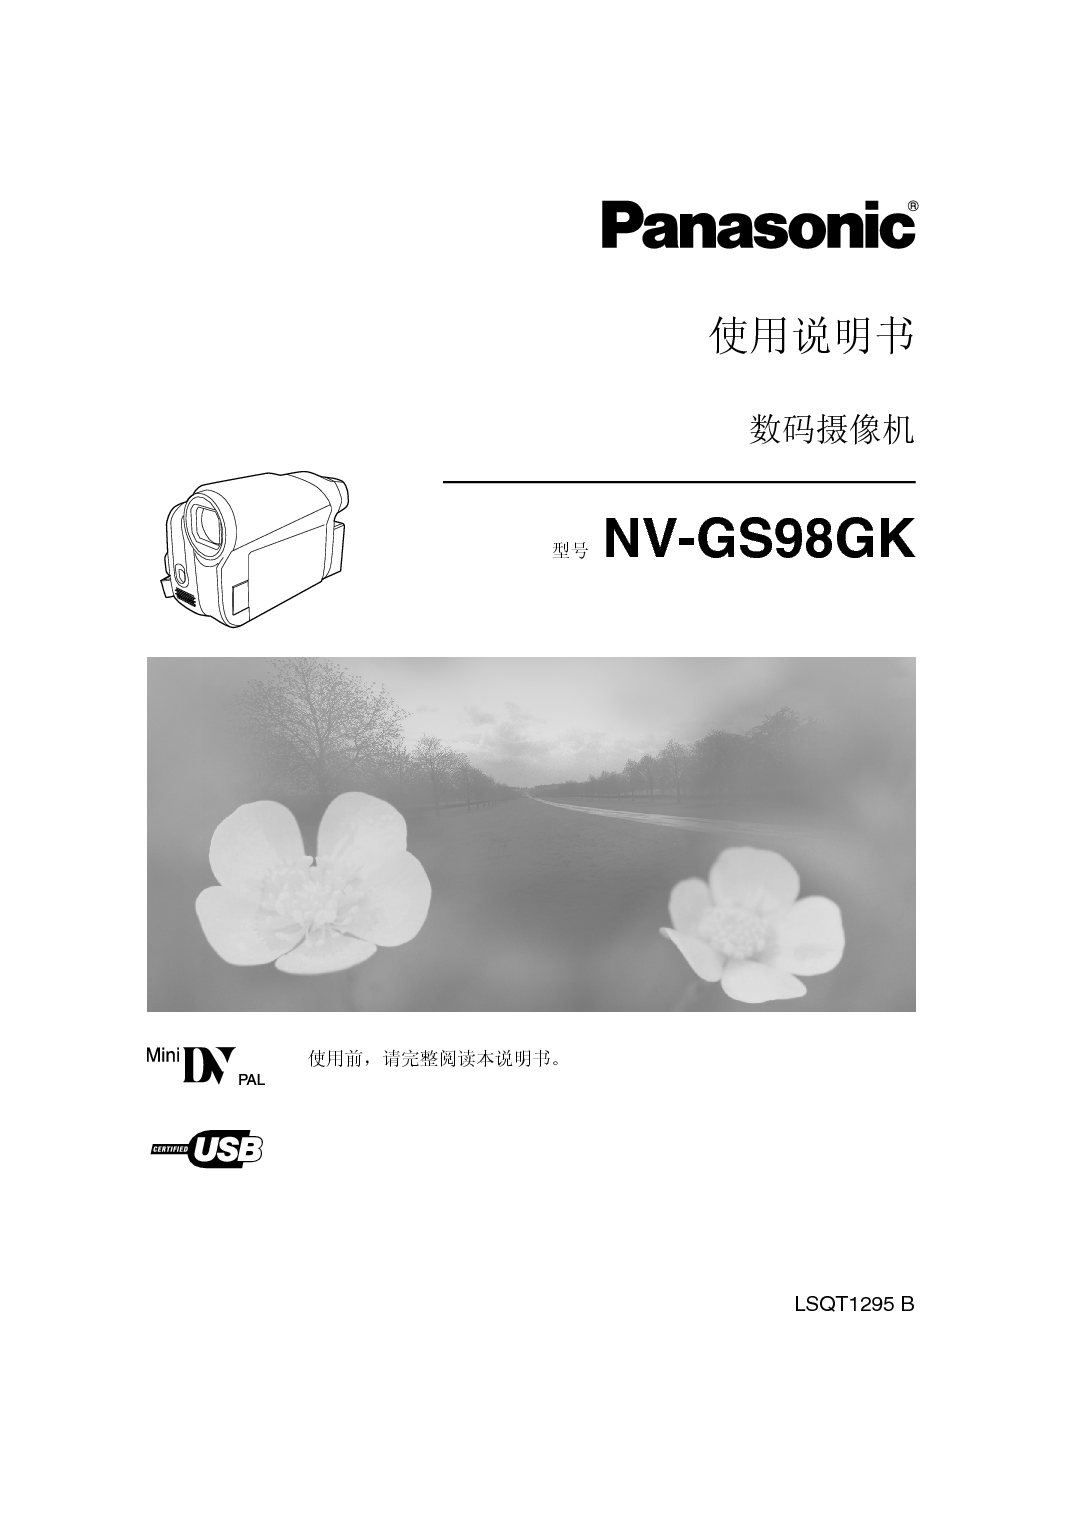 松下 Panasonic NV-GS98GK 说明书 封面